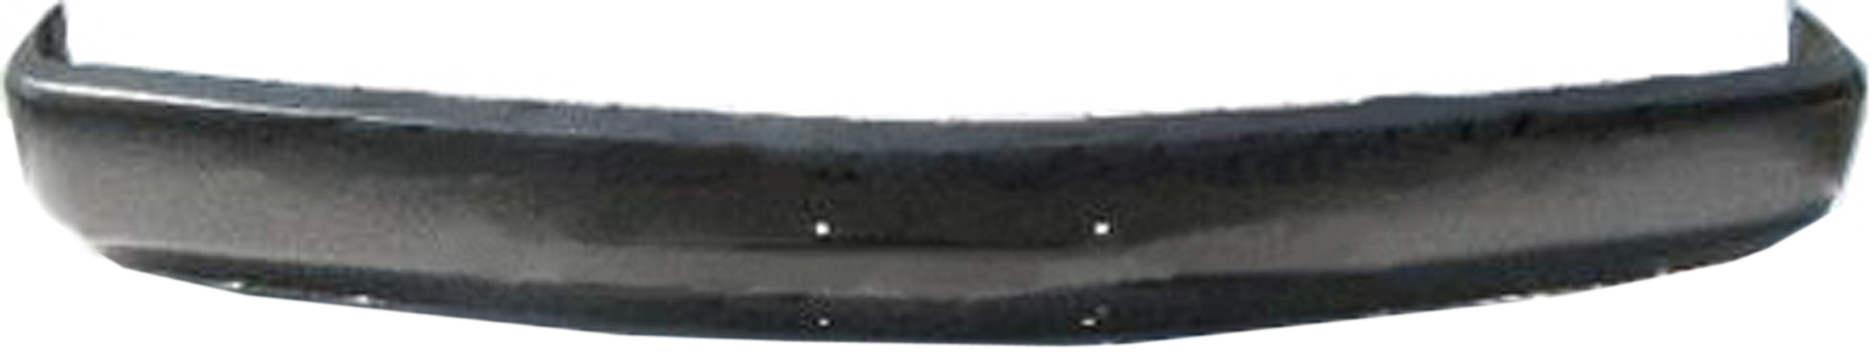 Aftermarket METAL FRONT BUMPERS for CHEVROLET - K2500, K2500,88-00,Front bumper face bar